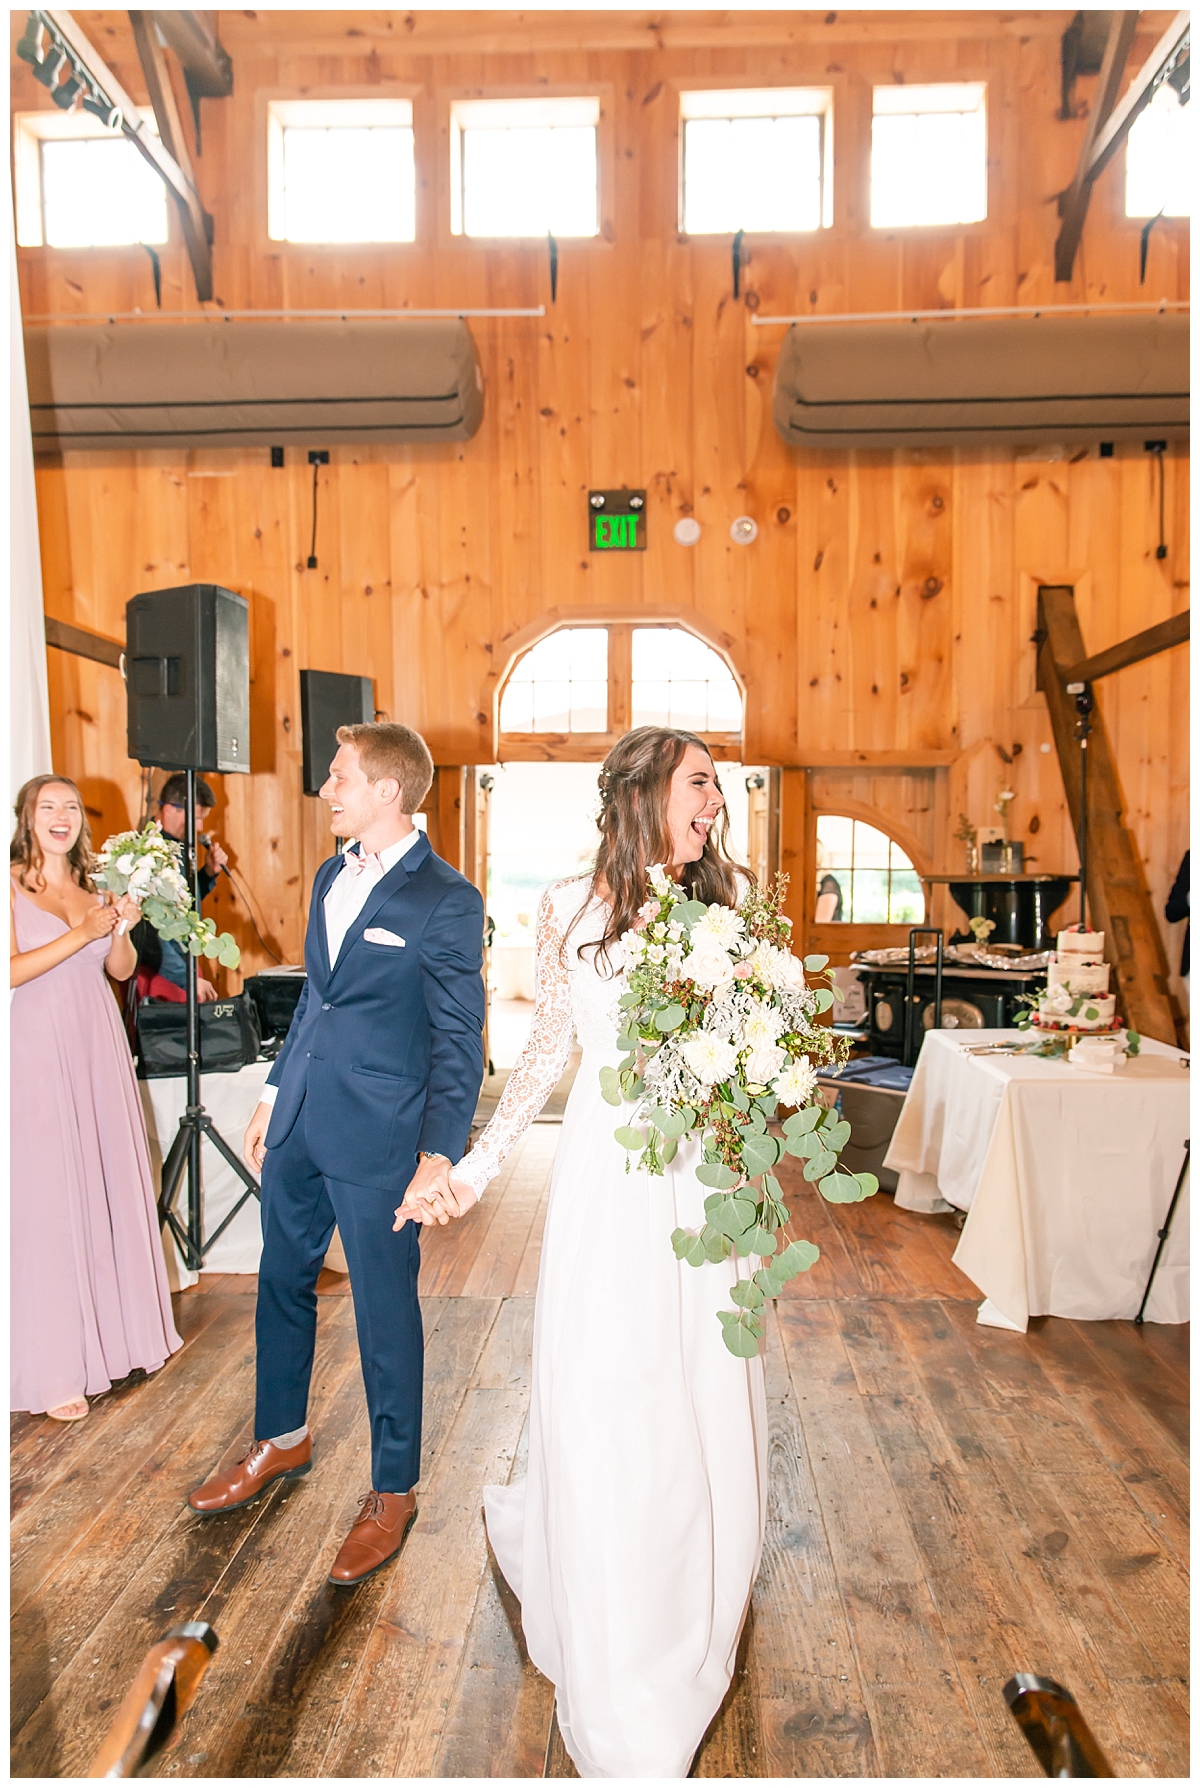 Rustic elegant barn wedding reception